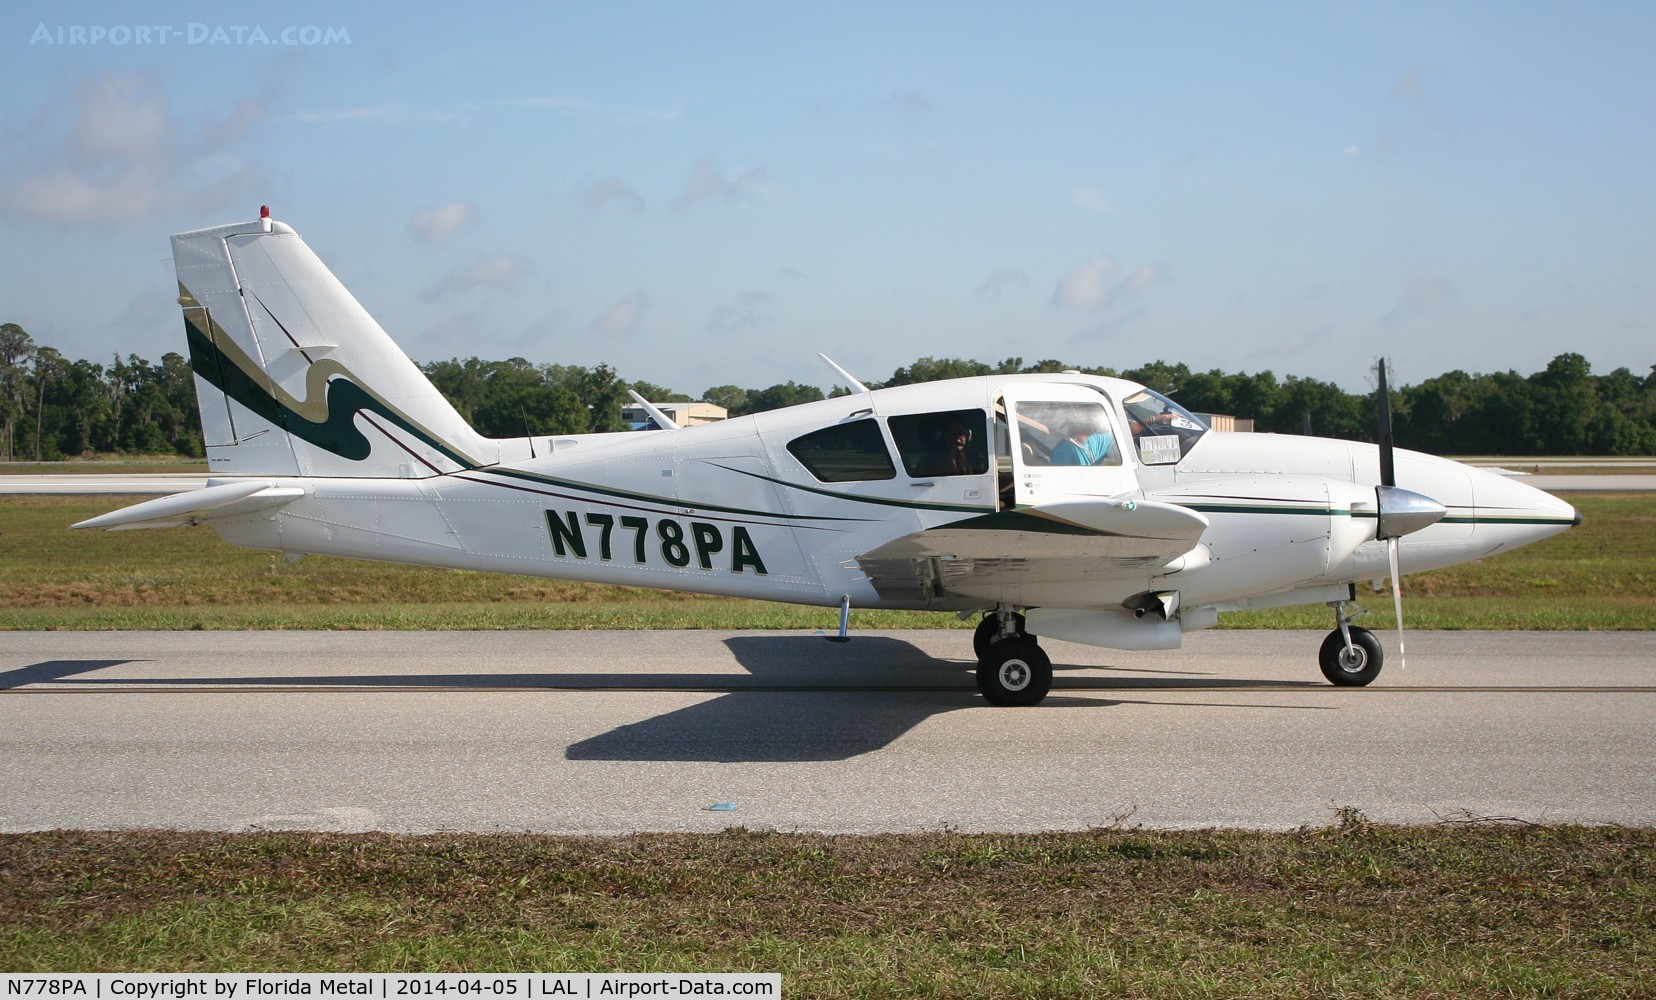 N778PA, 1977 Piper PA-23-250 C/N 27-7854053, PA-23 Aztec